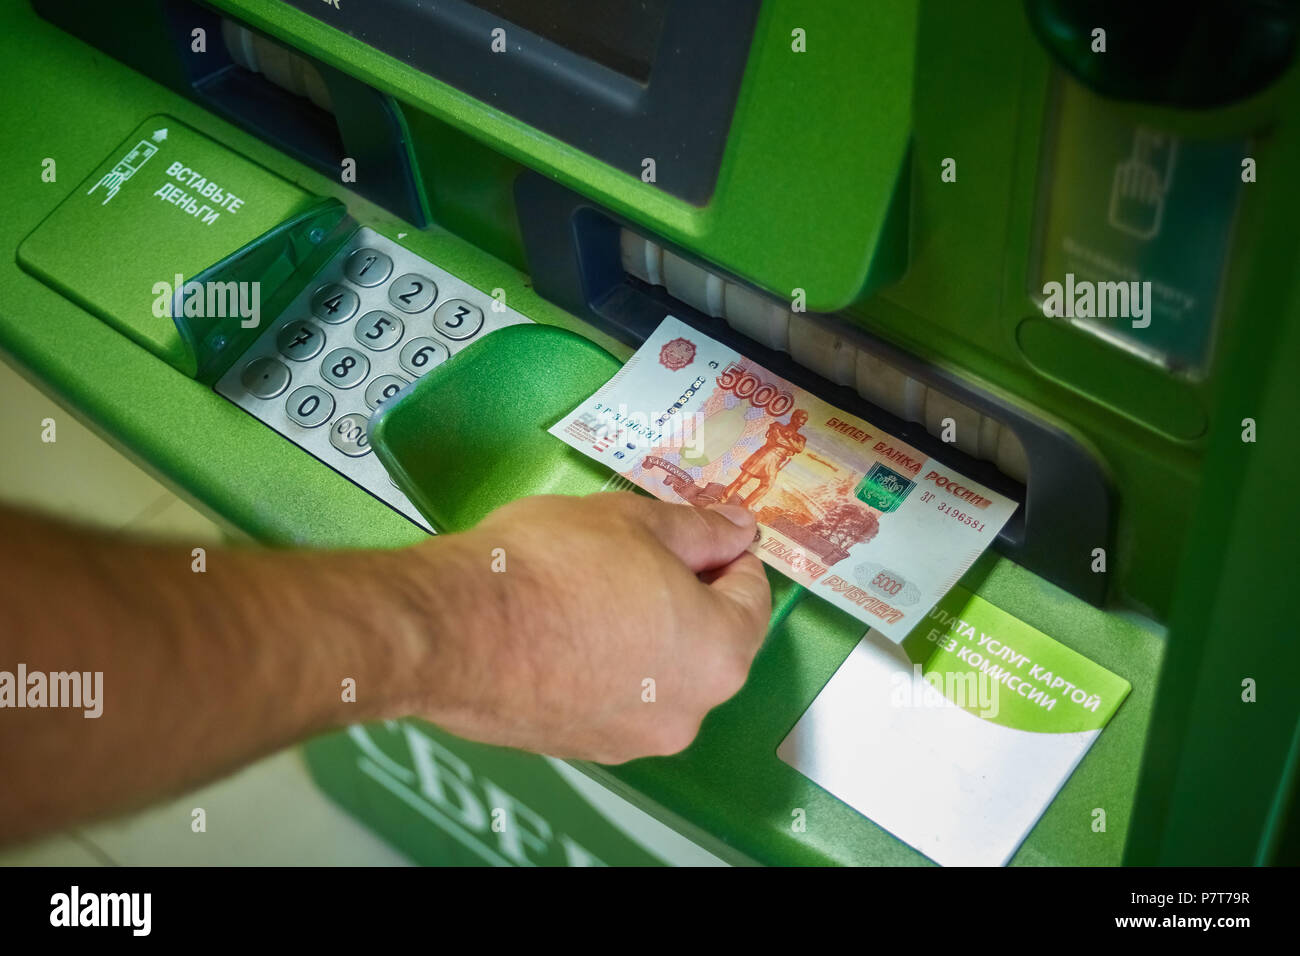 Syzran, Rusia - Junio 20 , 2018: finanzas, dinero, el banco y la gente concepto - cerca de la mano teniendo el recibo del cajero automático del Sberbank Foto de stock